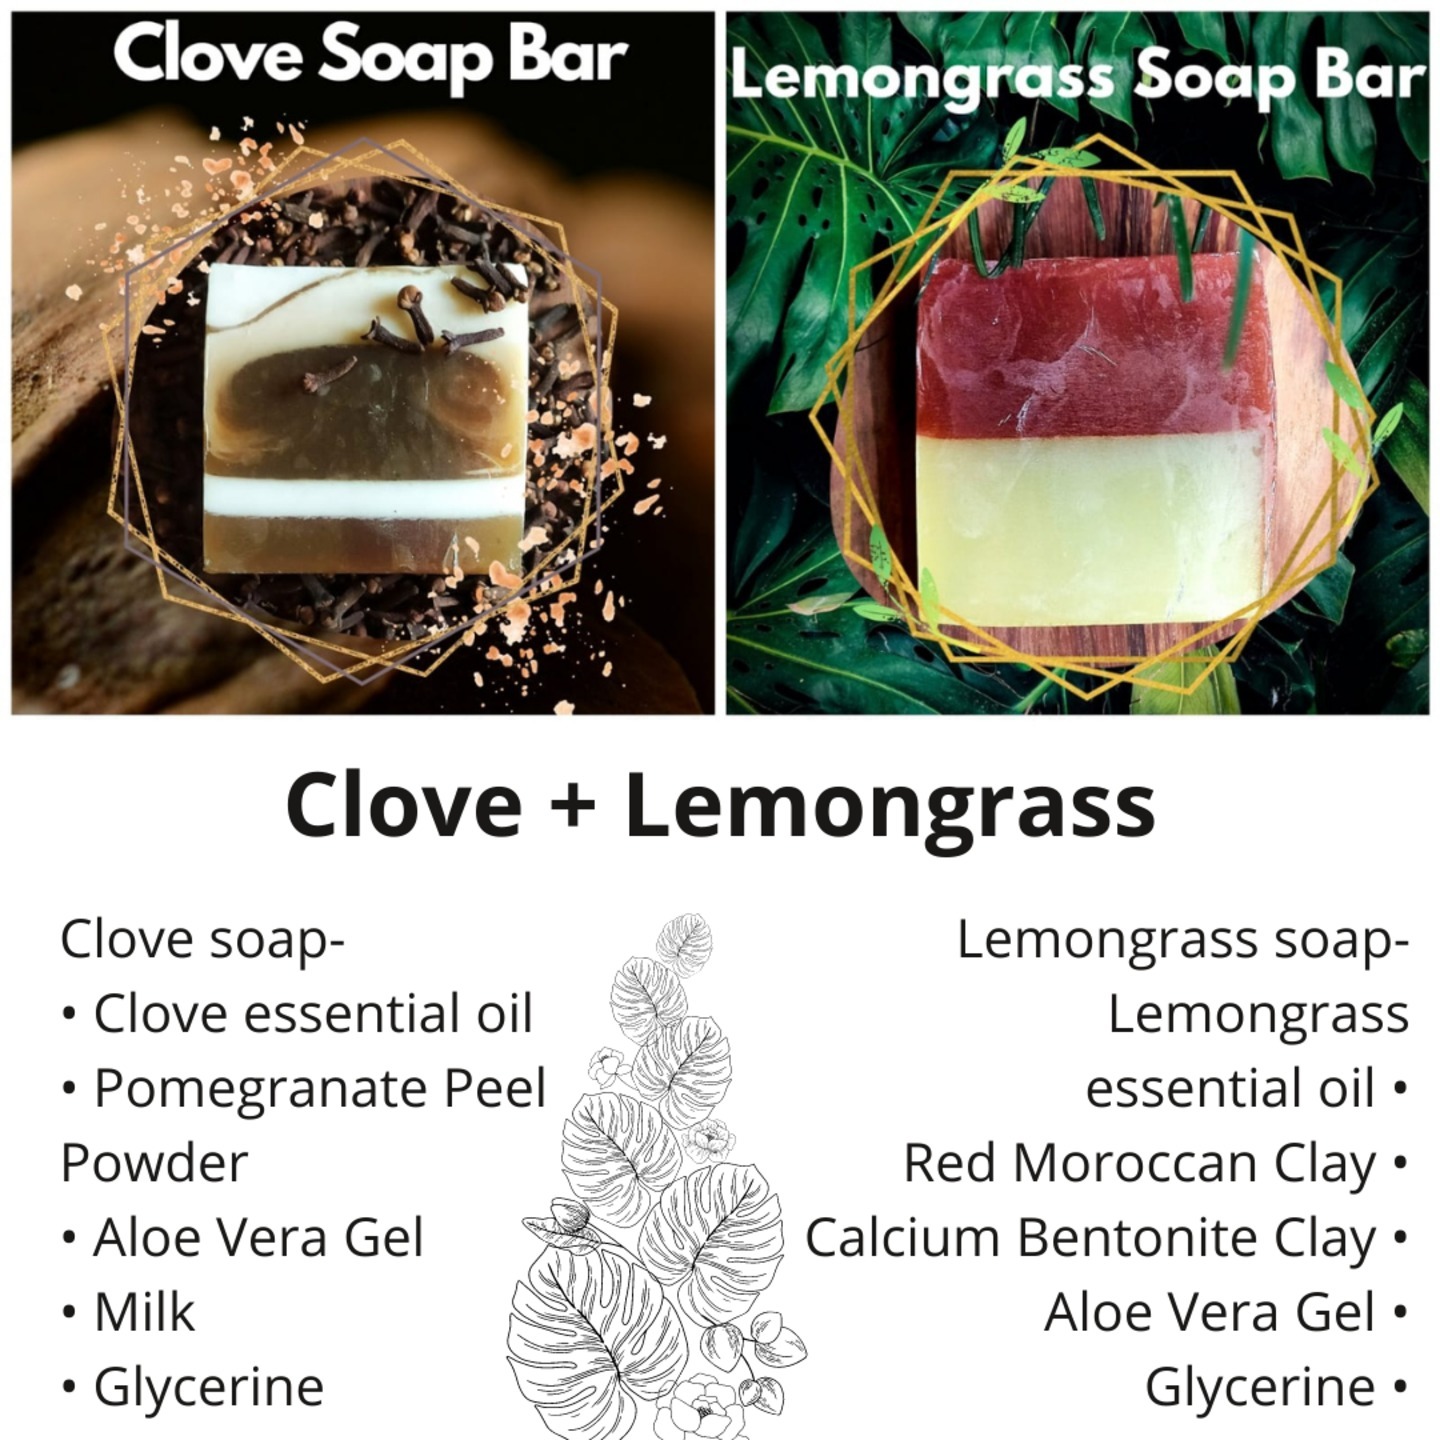 Clove Soap & Lemongrass Soap Bars